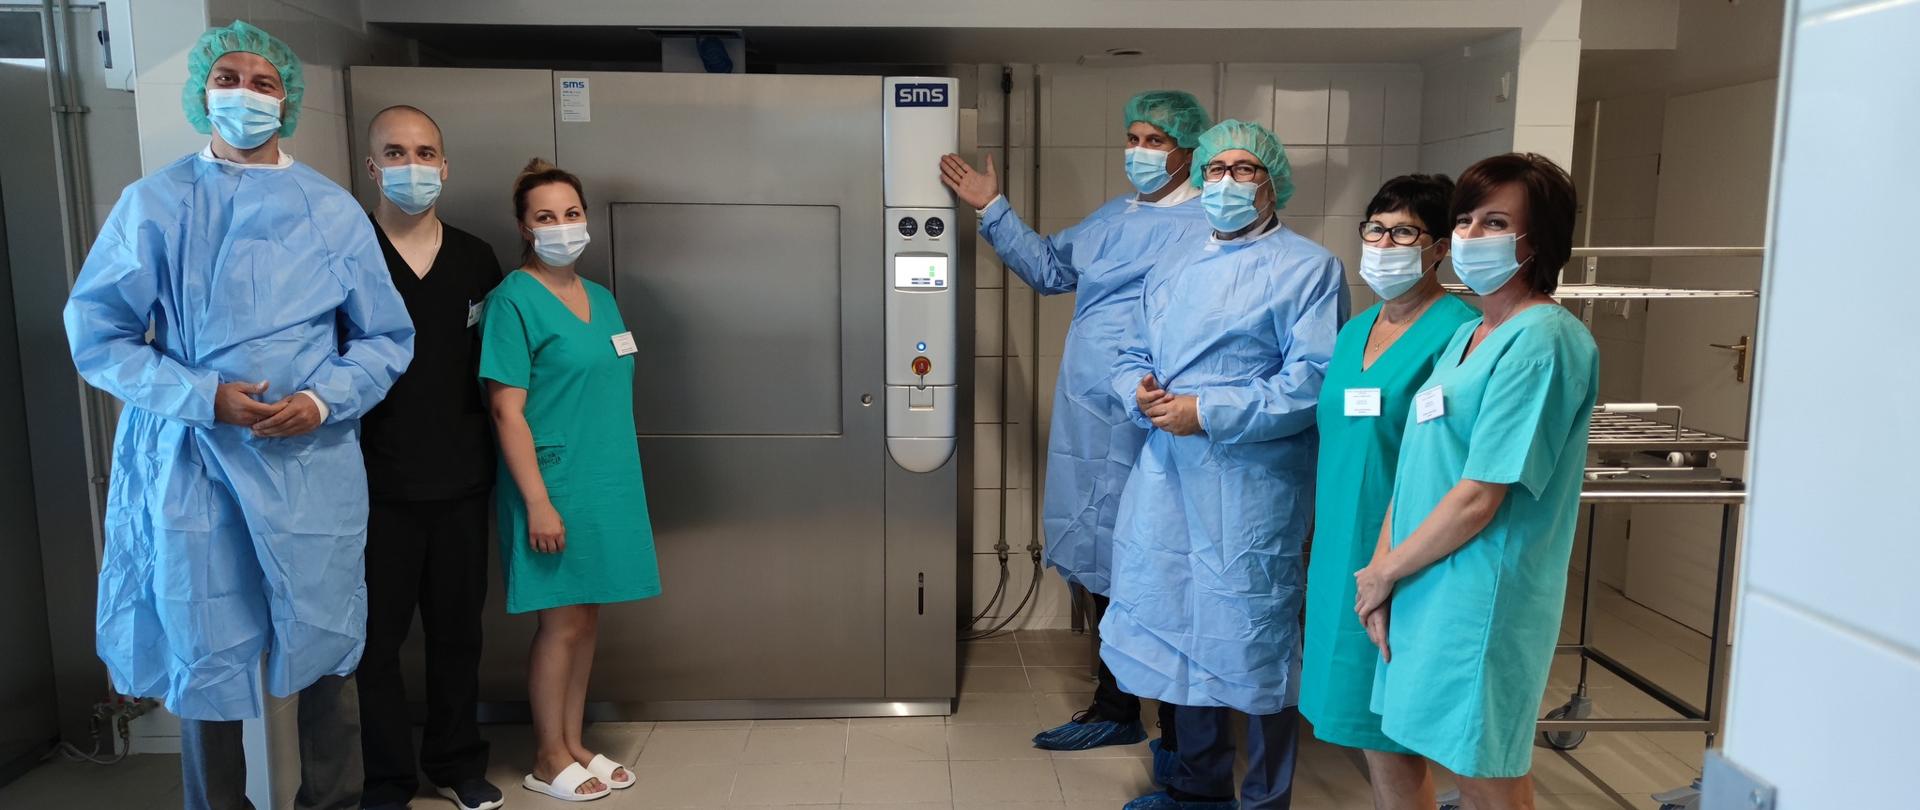 Sterylizatornia SPZZOZ w Przasnyszu zyskała nowe, profesjonalne urządzenie do sterylizacji narzędzi.